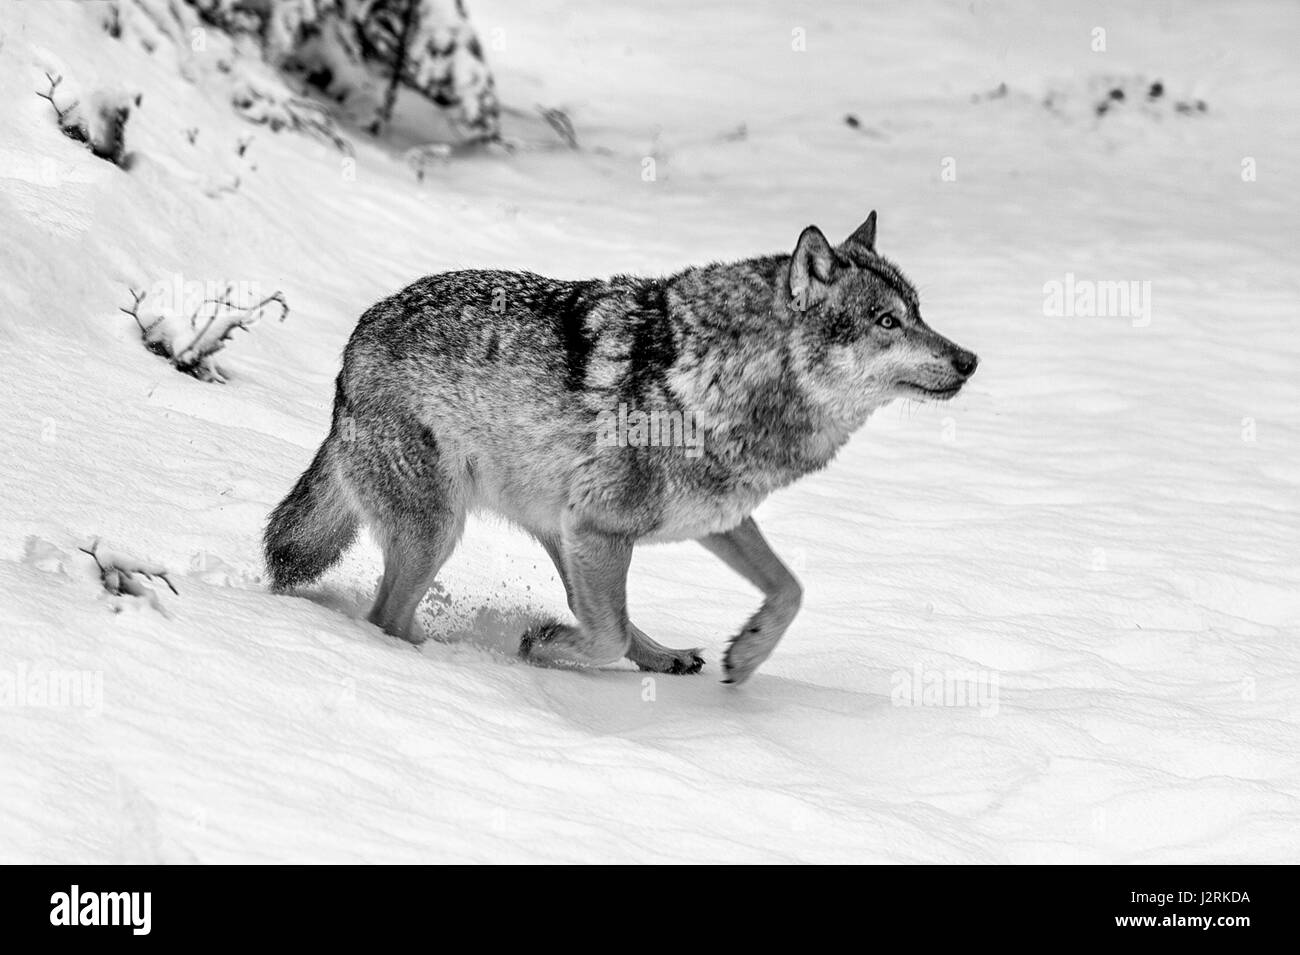 Hermosa solo adulto de lobo gris (Canis lupus), representada en el bosque cubierto de nieve en pleno invierno. (Bellas Artes, High Key, blanco y negro) Foto de stock